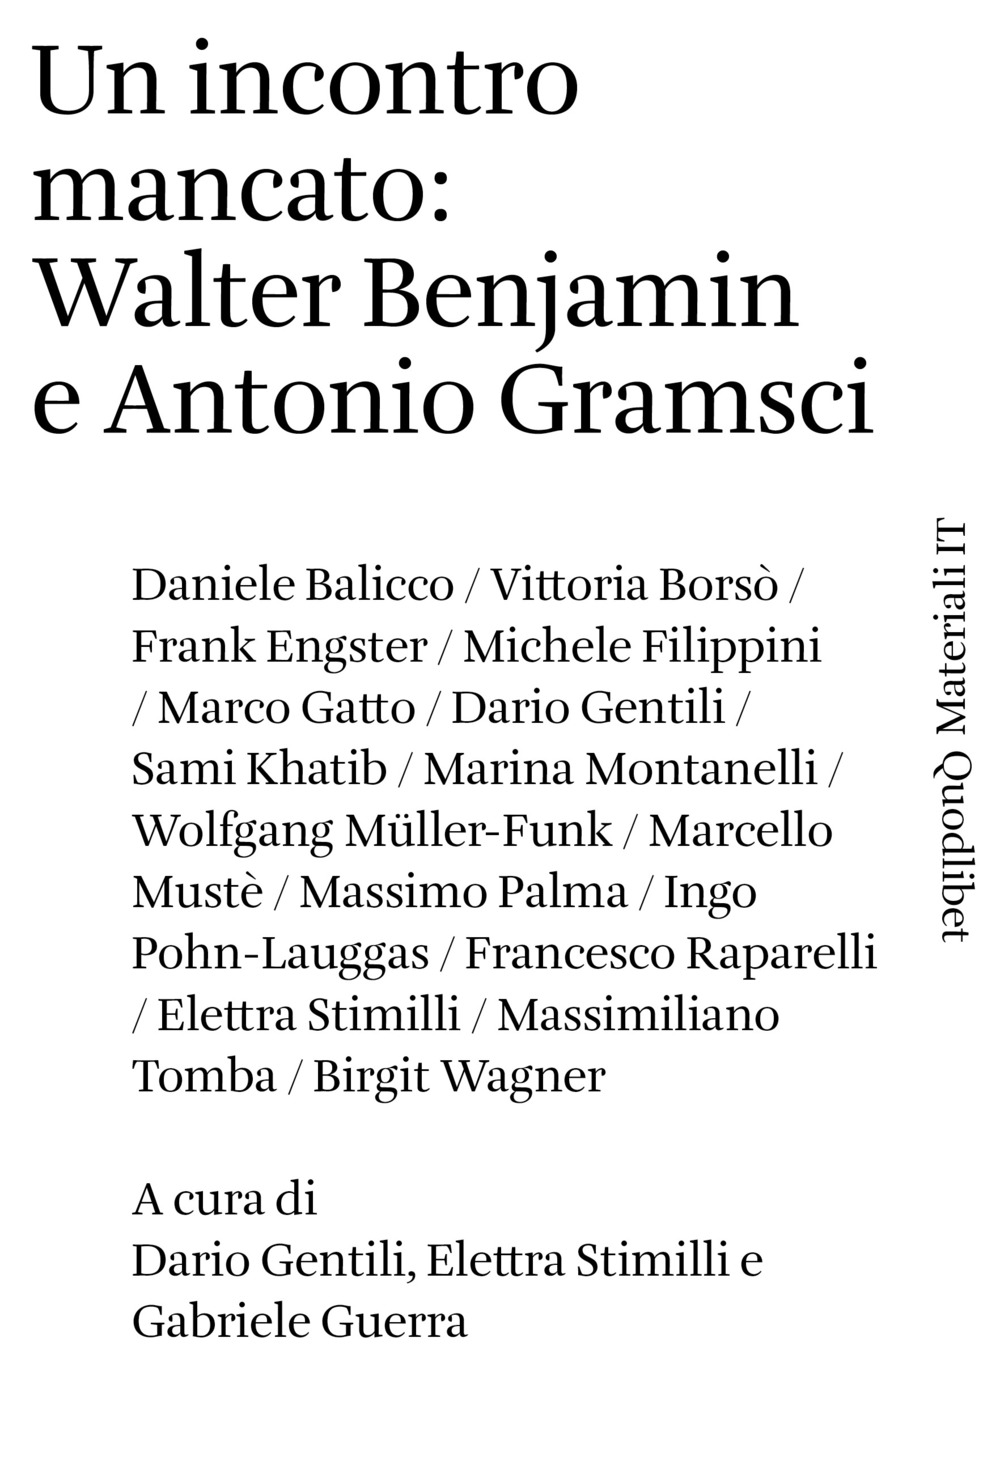 INCONTRO MANCATO: WALTER BENJAMIN E ANTONIO GRAMSCI (UN) - 9788822920799